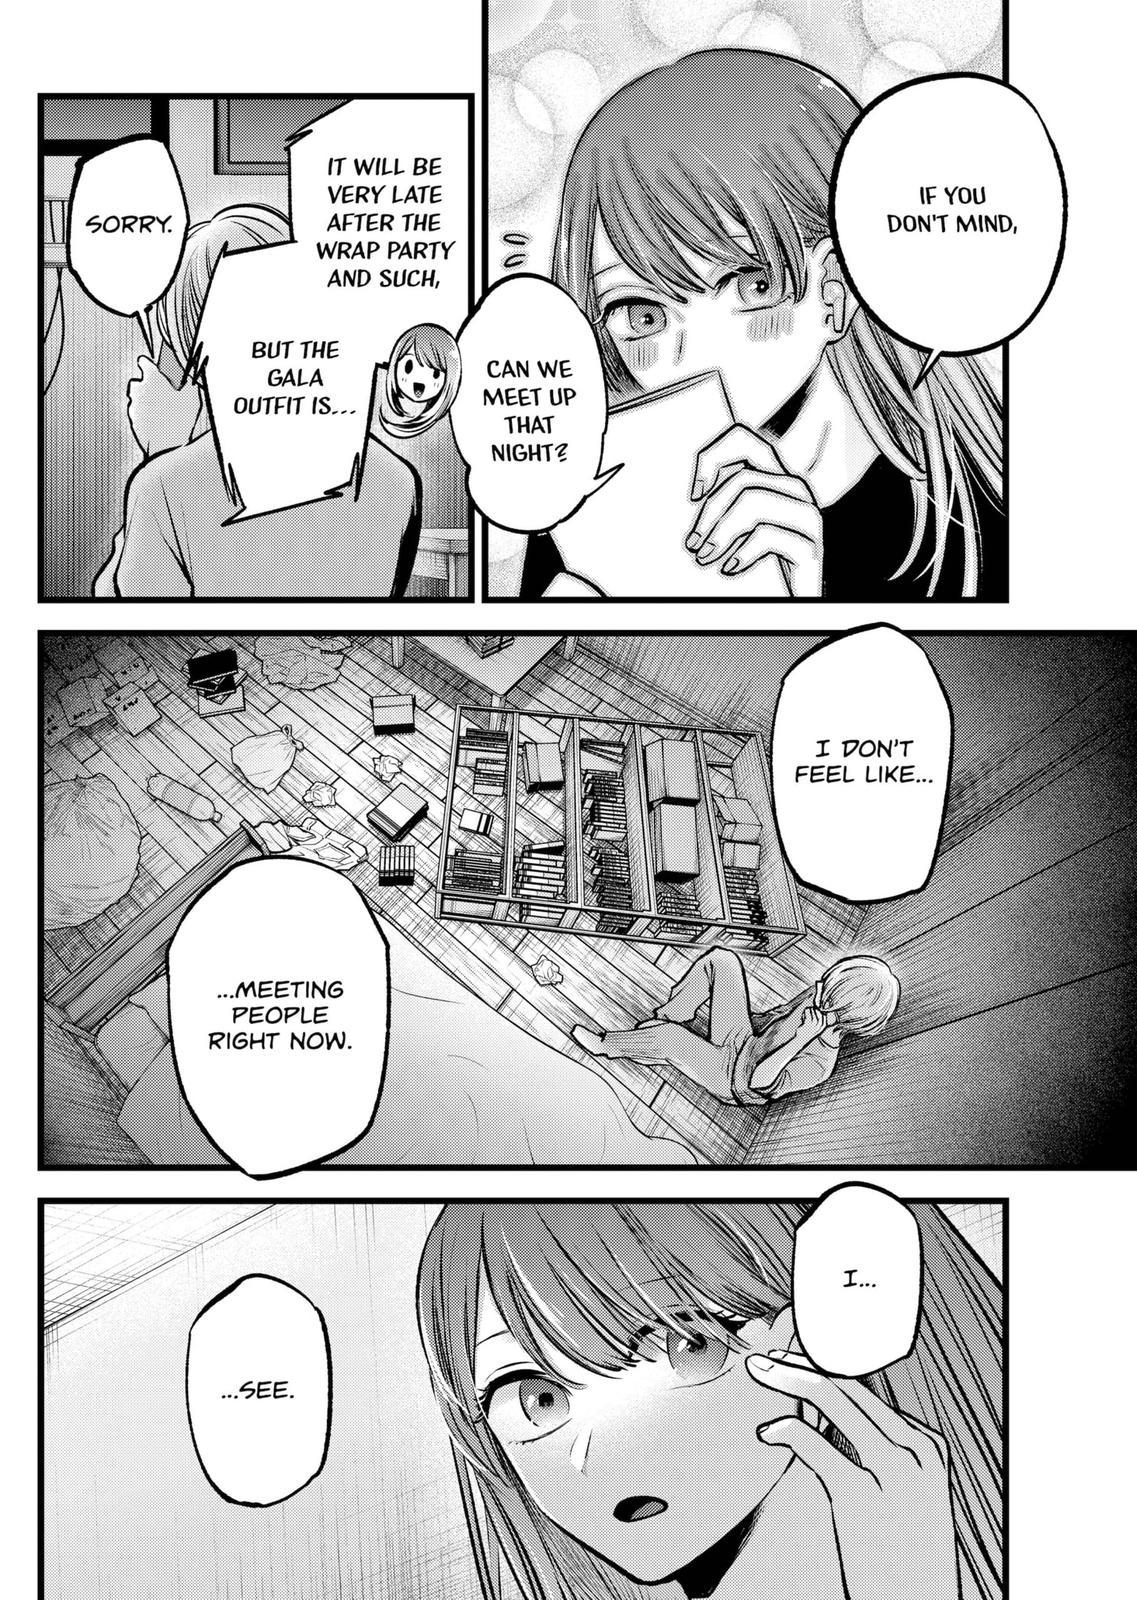 Oshi no ko, Chapter 116 - Oshi no ko Manga Online